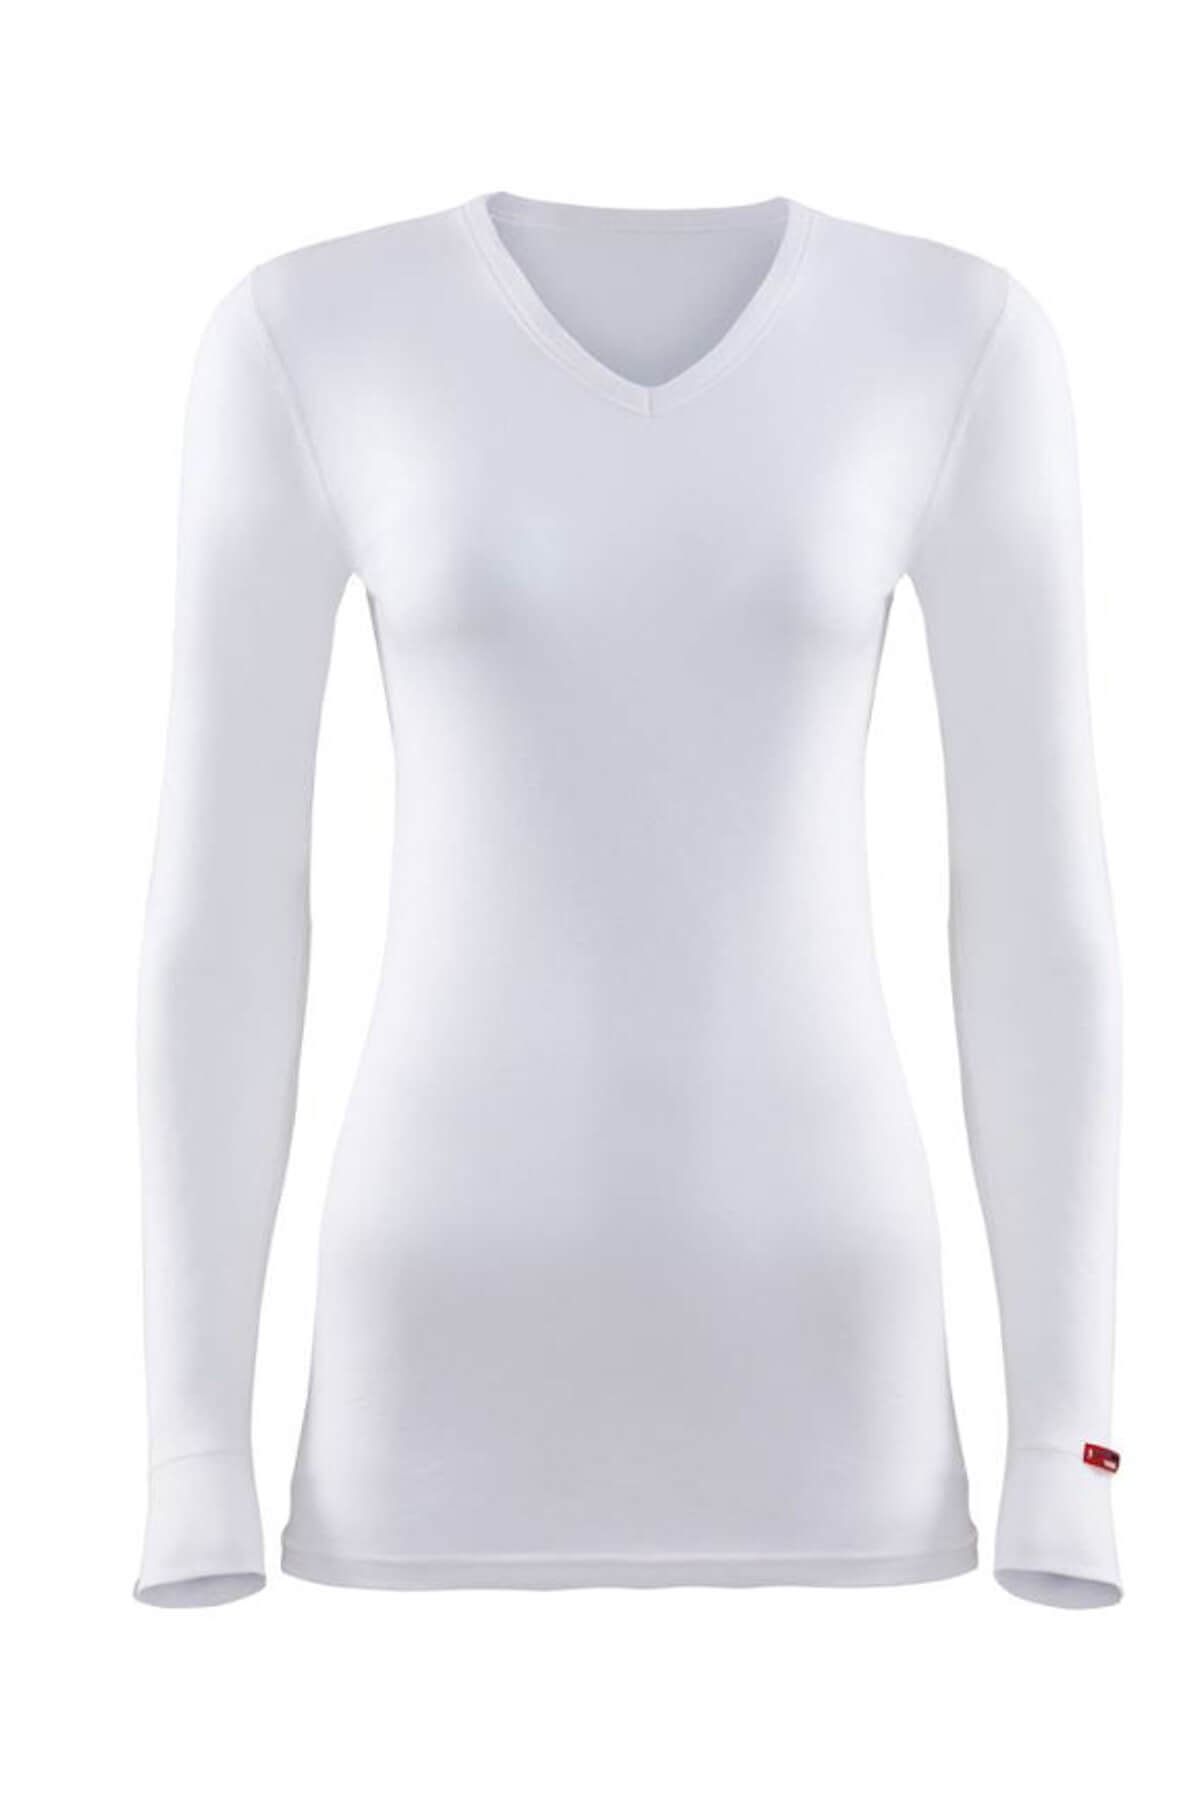 Blackspade Kadın Kar Beyaz 2. Seviye Termal T-shirt 1257